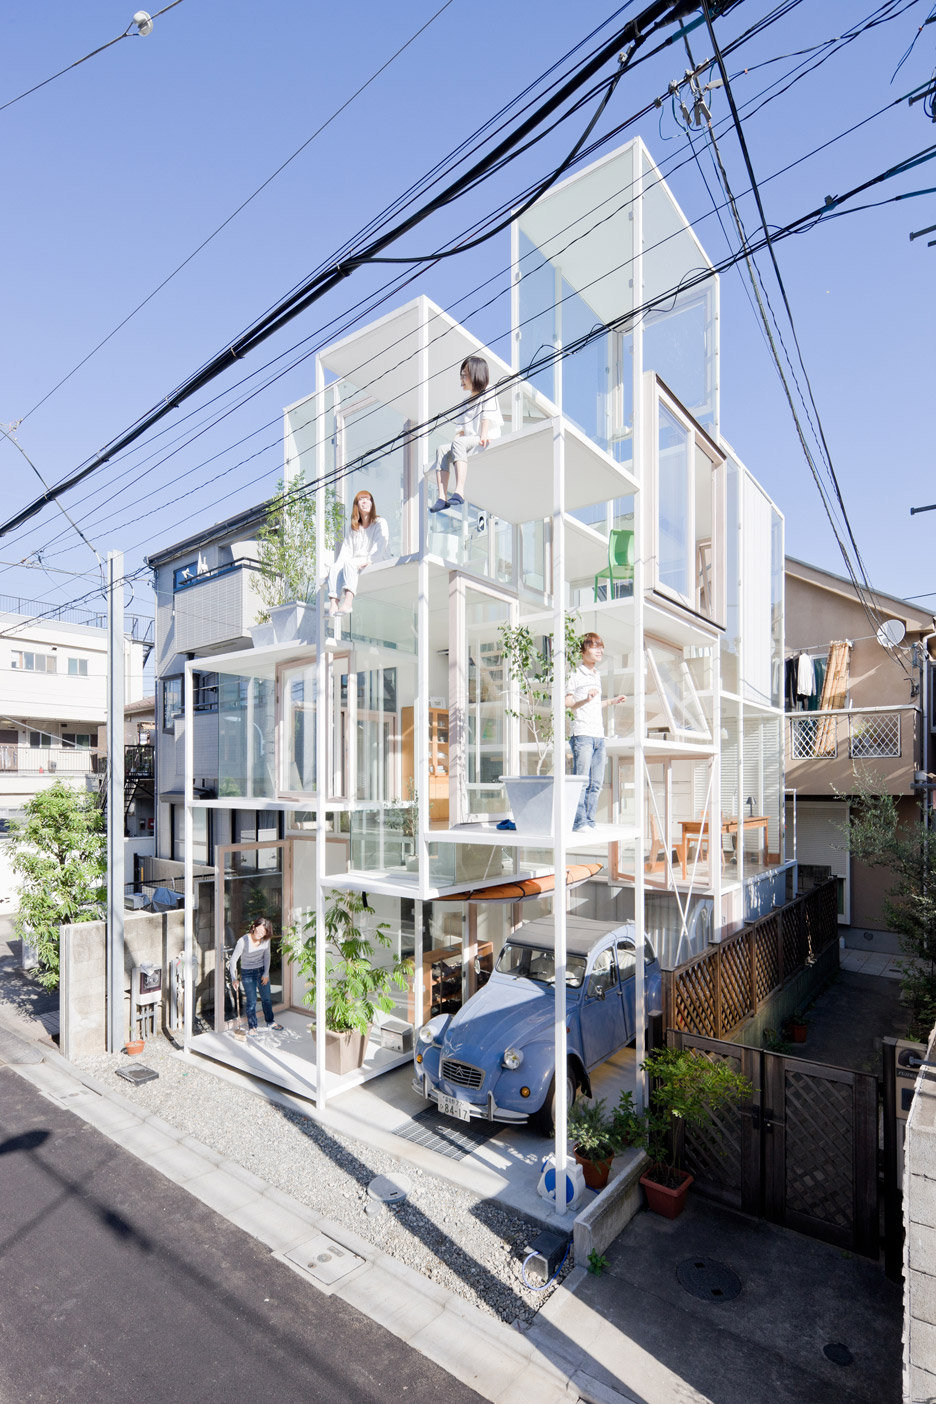 House NA, Tokyo, Japan by Sou Fujimoto, 2007–2011